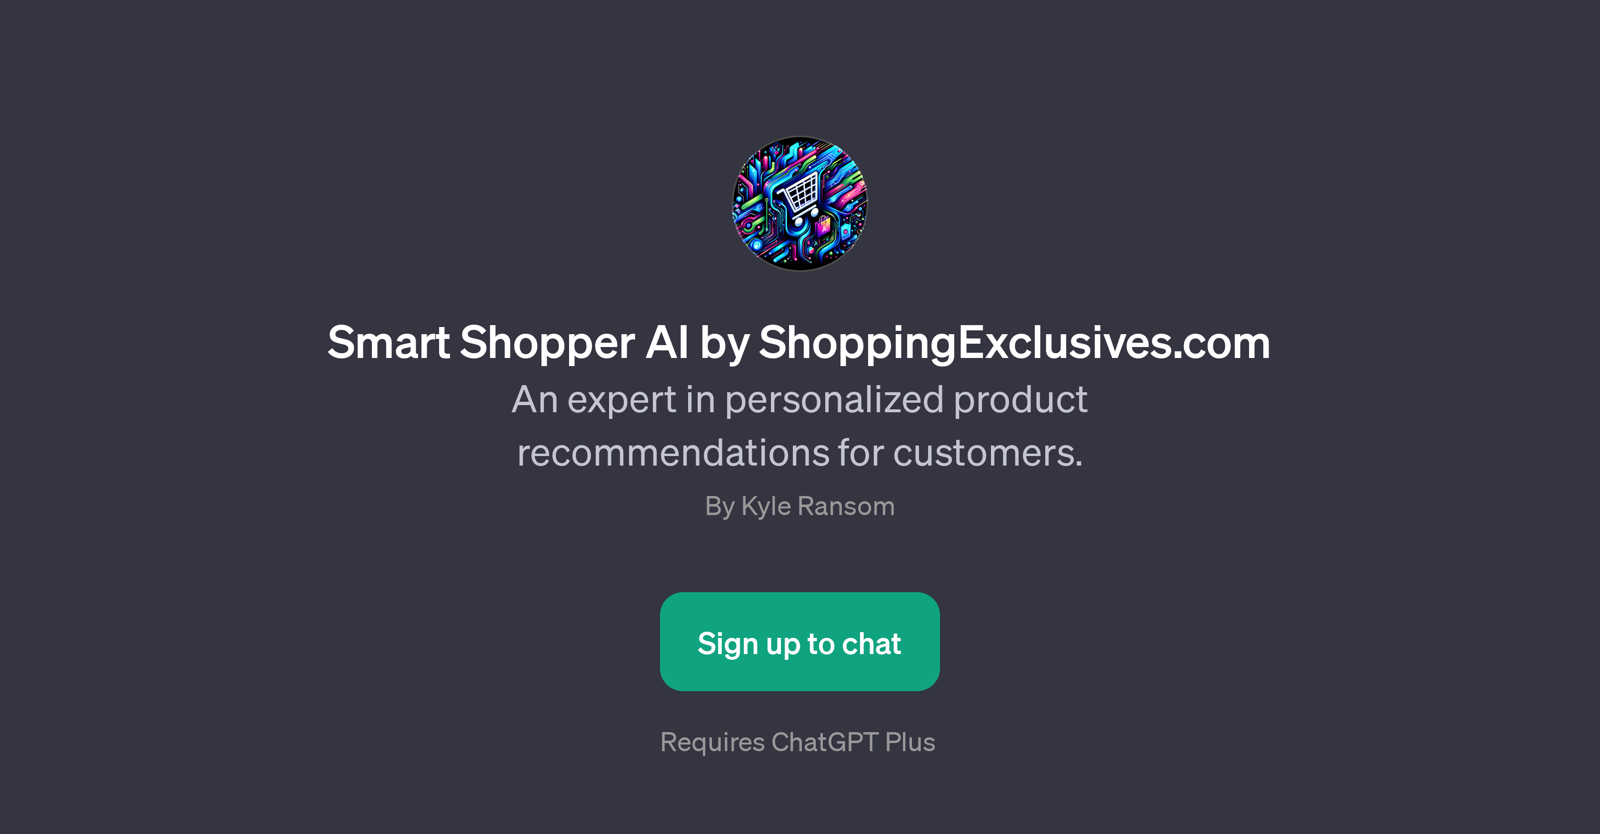 Smart Shopper AI by ShoppingExclusives.com website